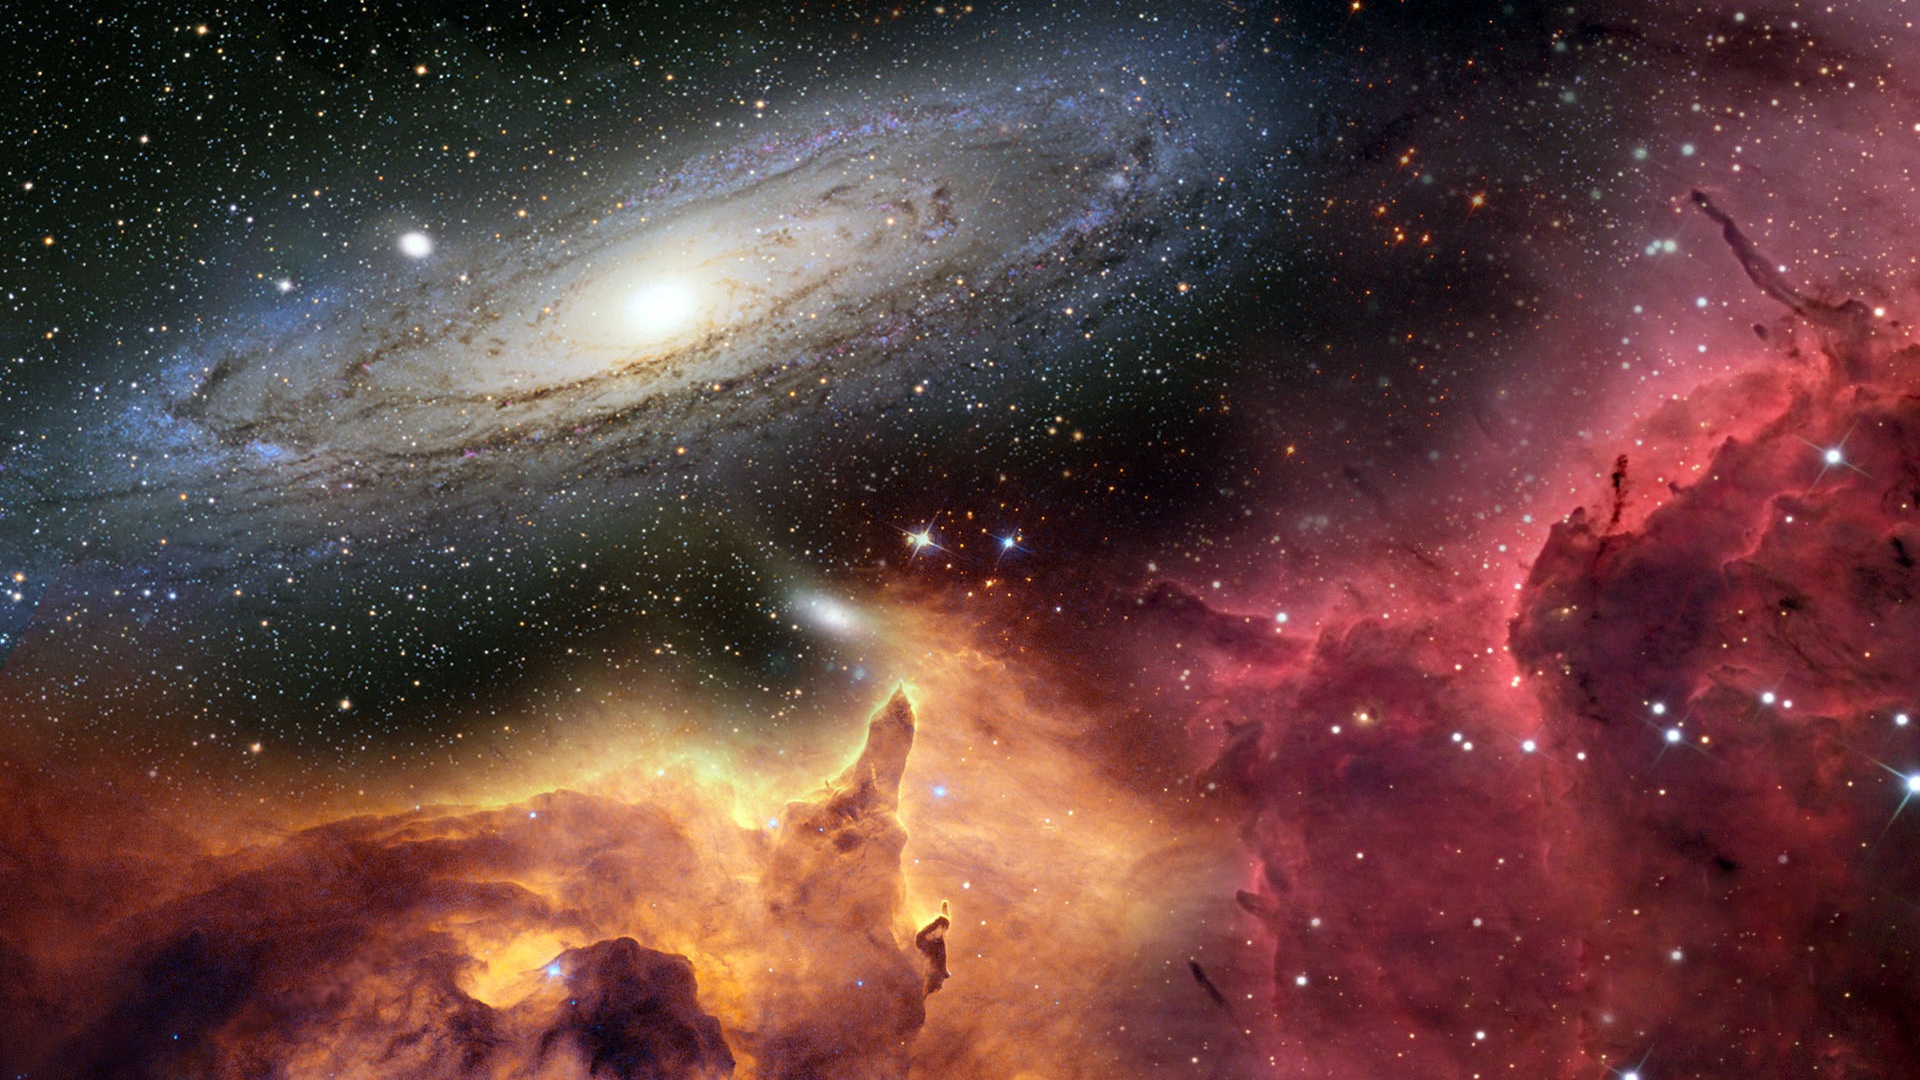 galaxie wallpaper hd,weltraum,nebel,himmel,natur,astronomisches objekt